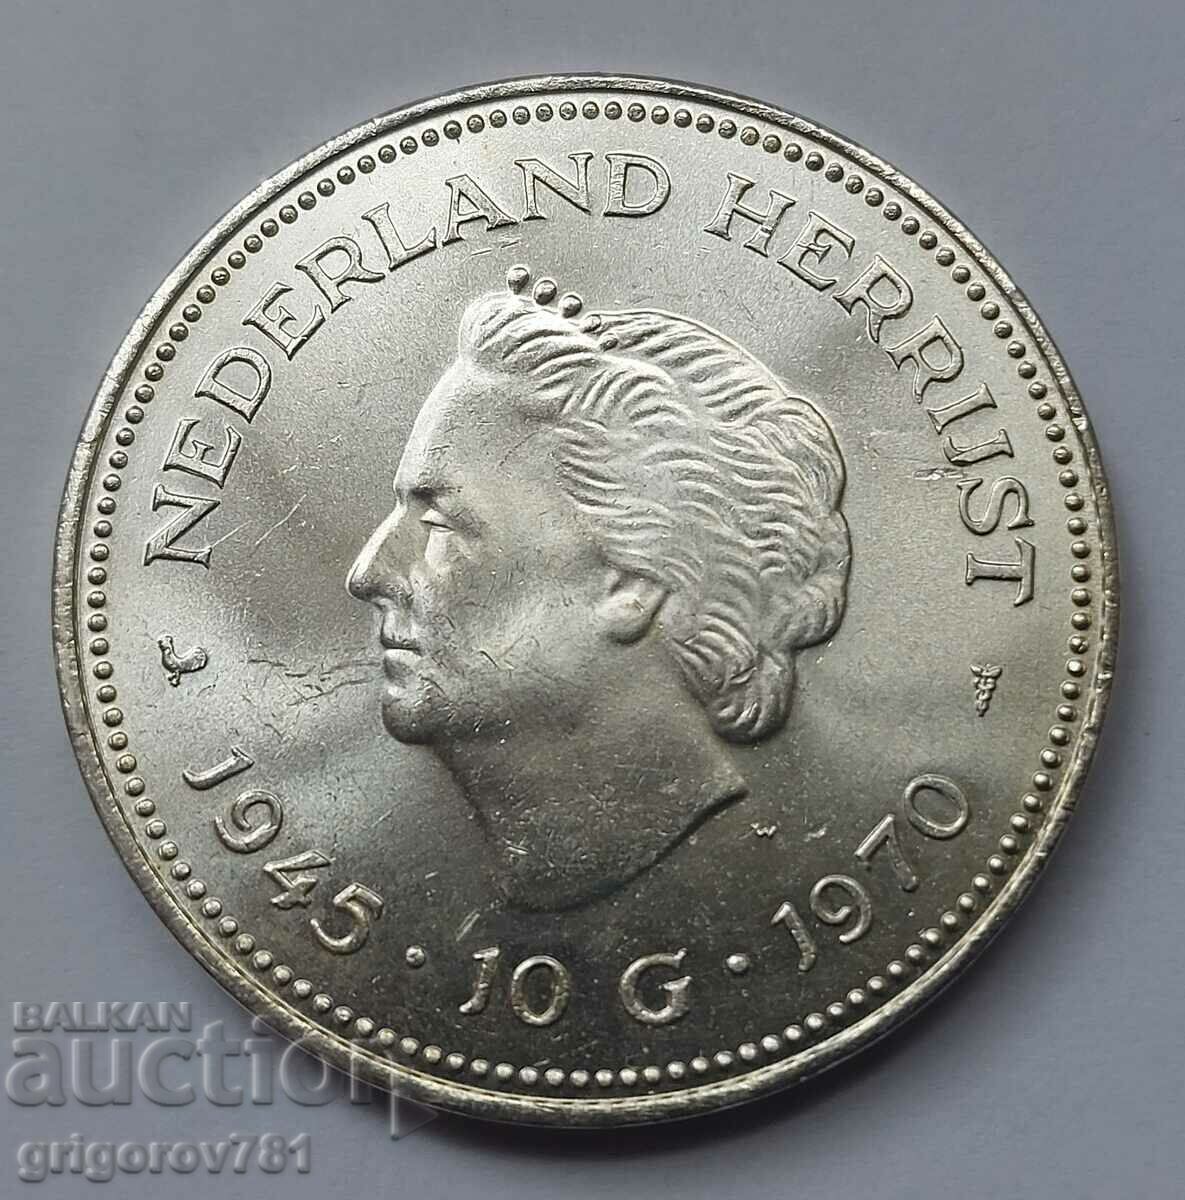 10 guldeni de argint Olanda 1970 - Moneda de argint #3